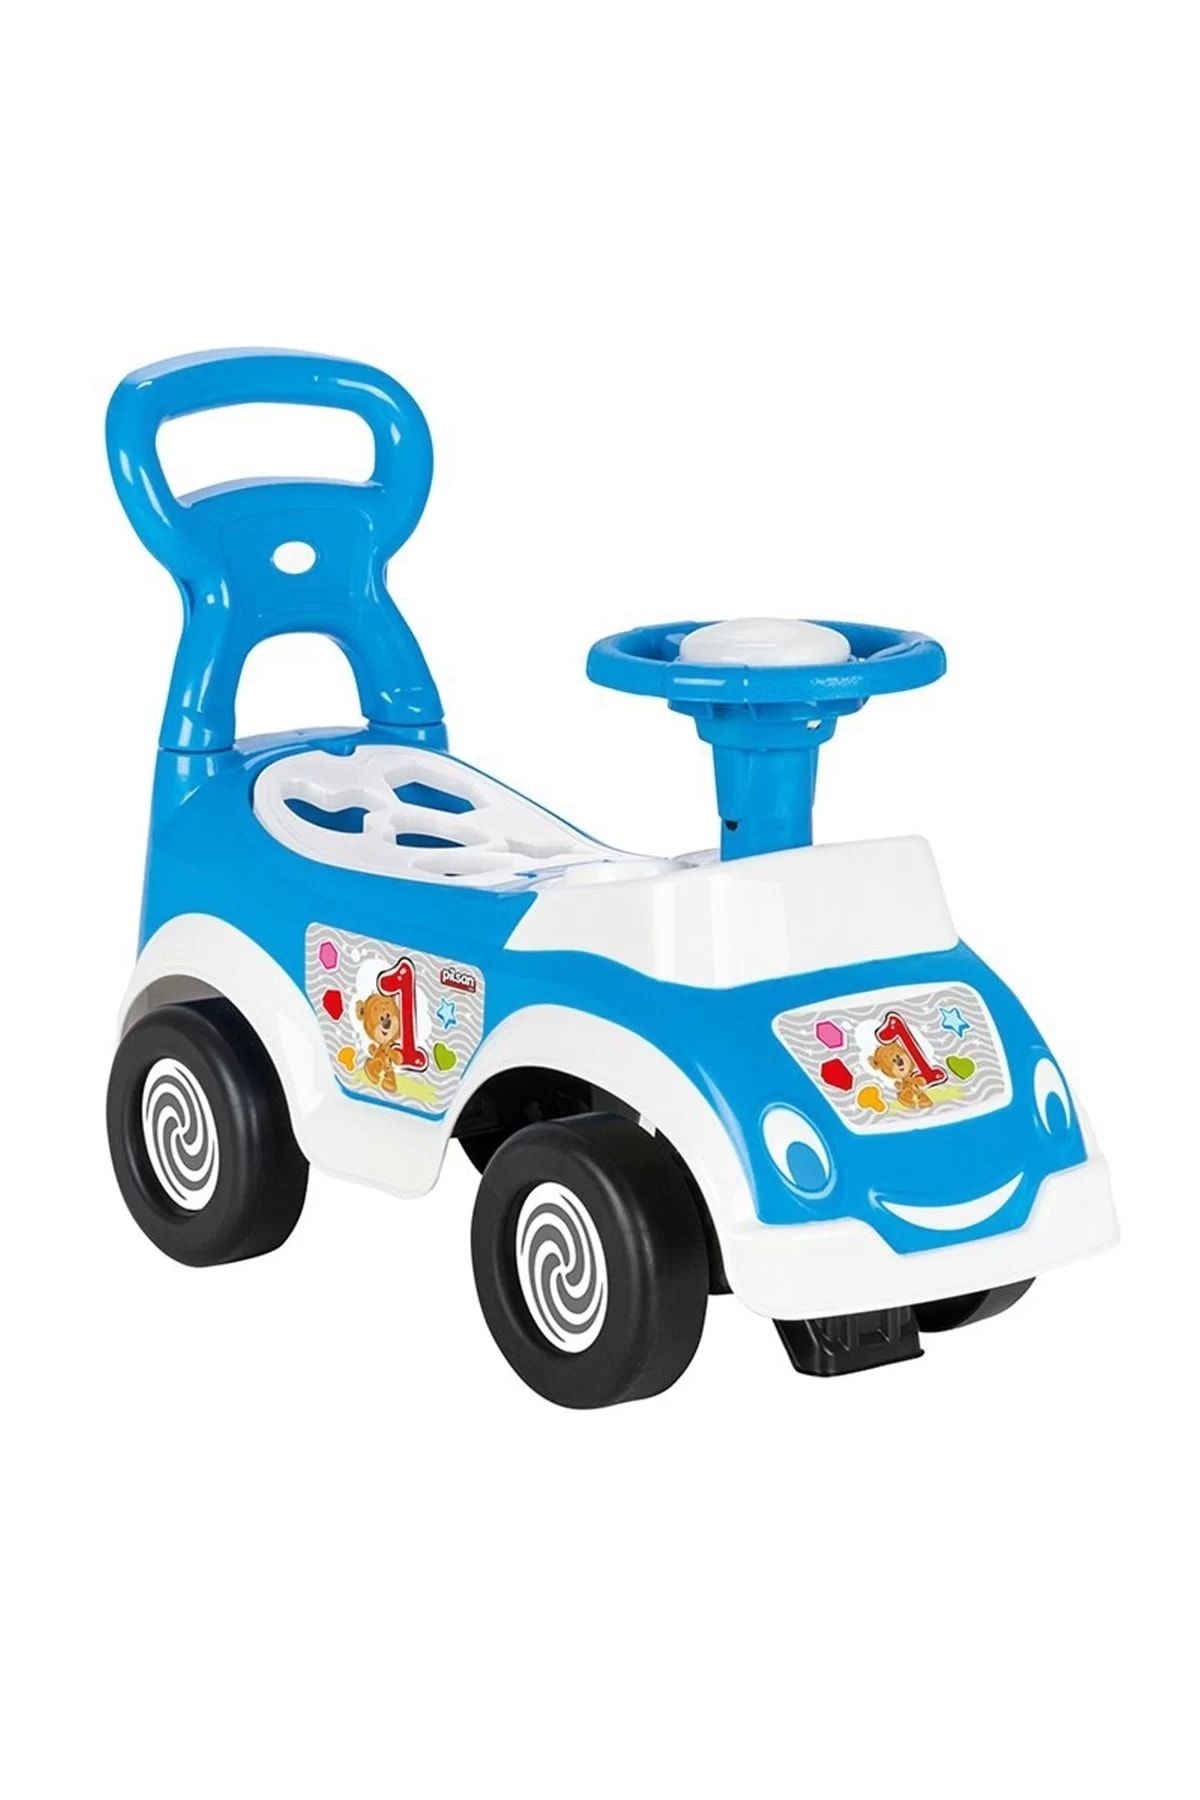 PİLSAN Mavi Bultaklı Oyuncak Benim Ilk Arabam Geliştirici Oyuncak Yürümeye Yardımcı Pedalsız Araba